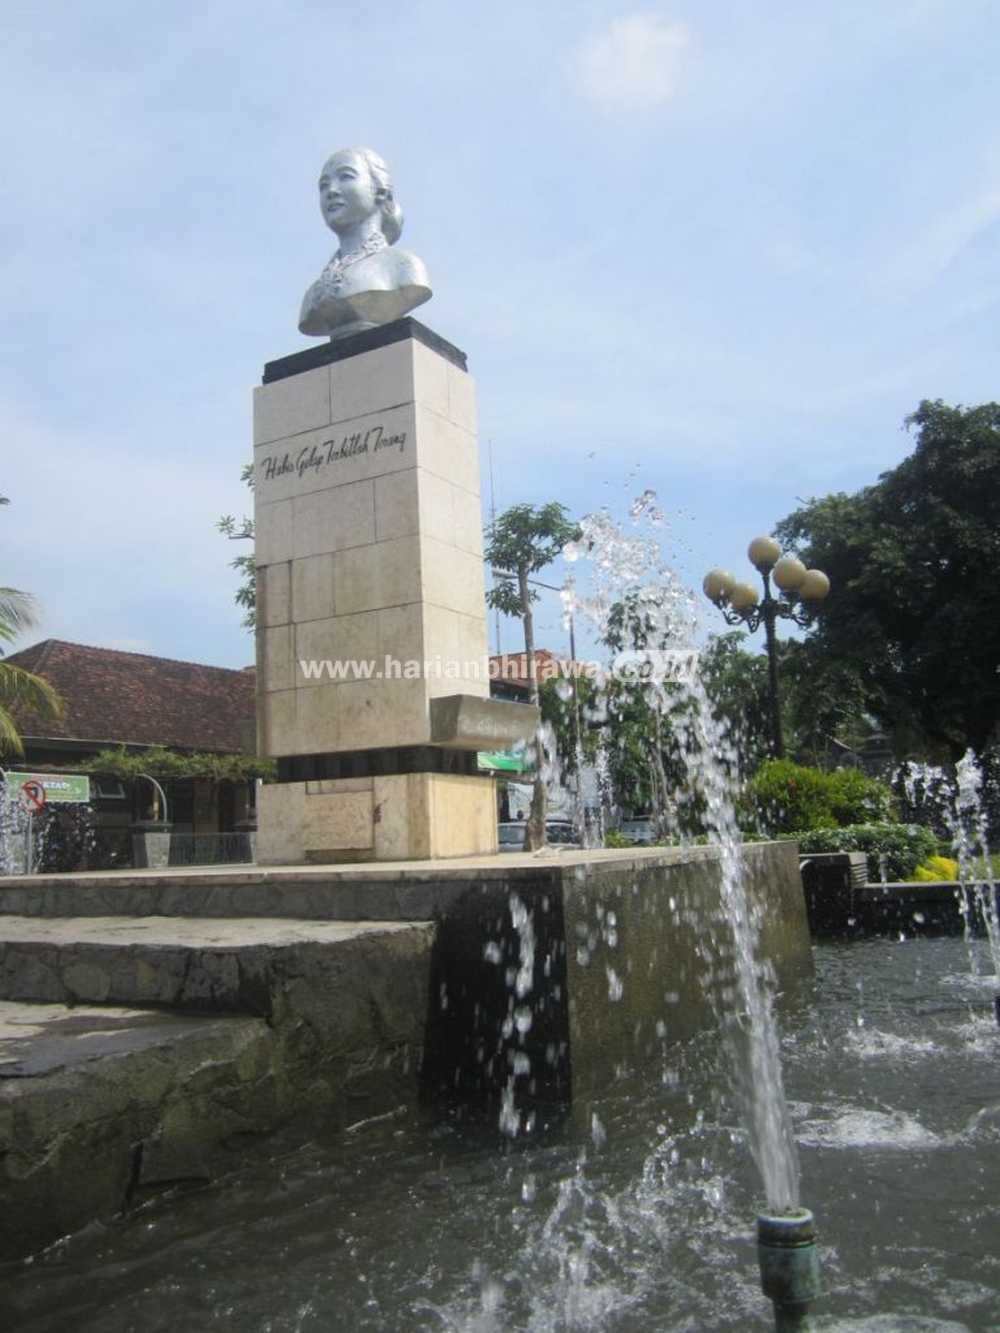 PATUNG KARTINI DI KOTA TULUNGAGUNG Patung Kartini di Taman Kartini depan Pendopo Kongas Arum Kusumaning Bongso Kota Tulungagung, Kamis (21/4). Sudah 43 tahun patung itu berdiri sejak diresmikan oleh Pjs Bupati KDH Tulungagung, R Soenardi, tanggal 21 April 1973 silam. Tetap terawat dan berdiri kokoh. Tanda apresiasi bagi perjuangan dan jasa RA Kartini yang hingga saat ini selalu diperingati setiap tanggal 21 April. (wed/bhirawa]